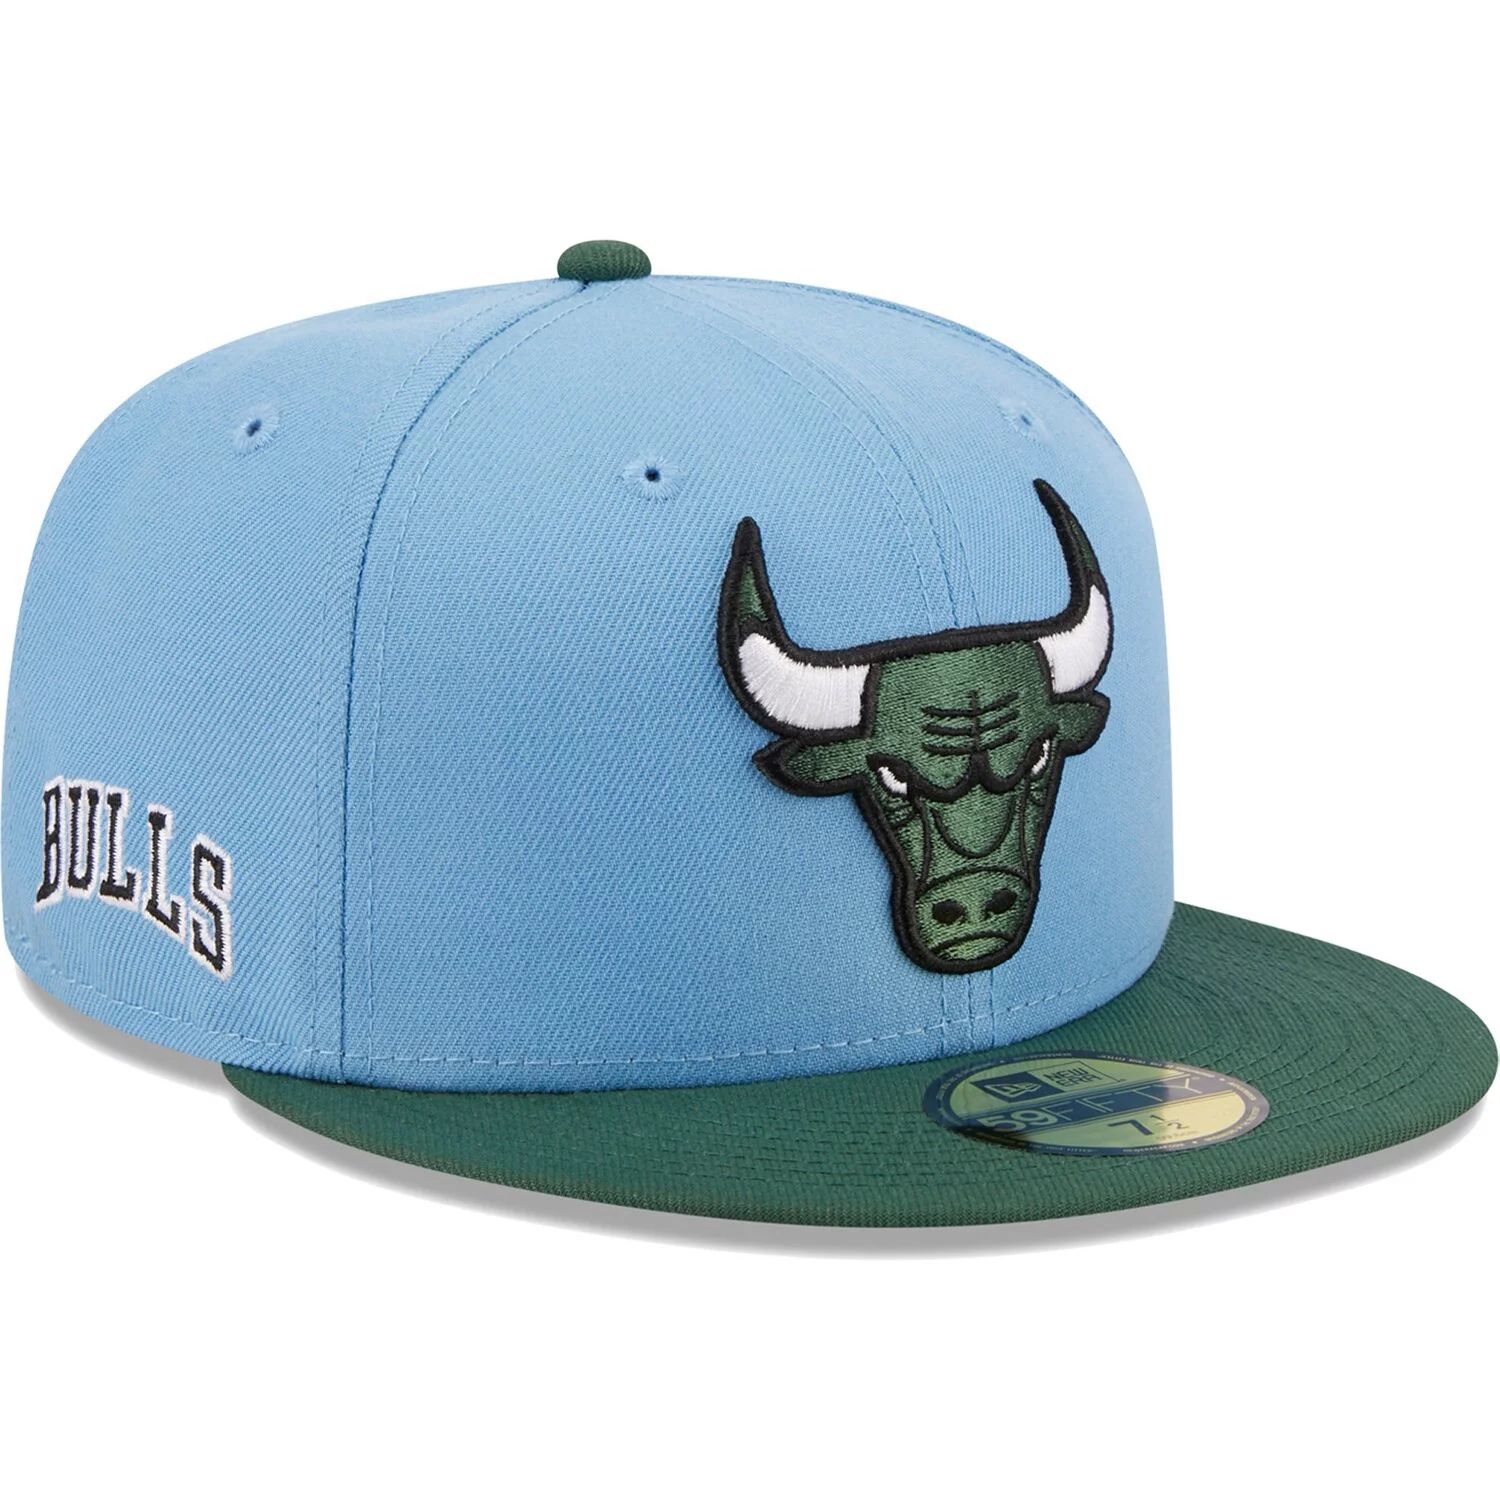 Мужская кепка New Era светло-синяя/зеленая двухцветная приталенная кепка Chicago Bulls 59FIFTY